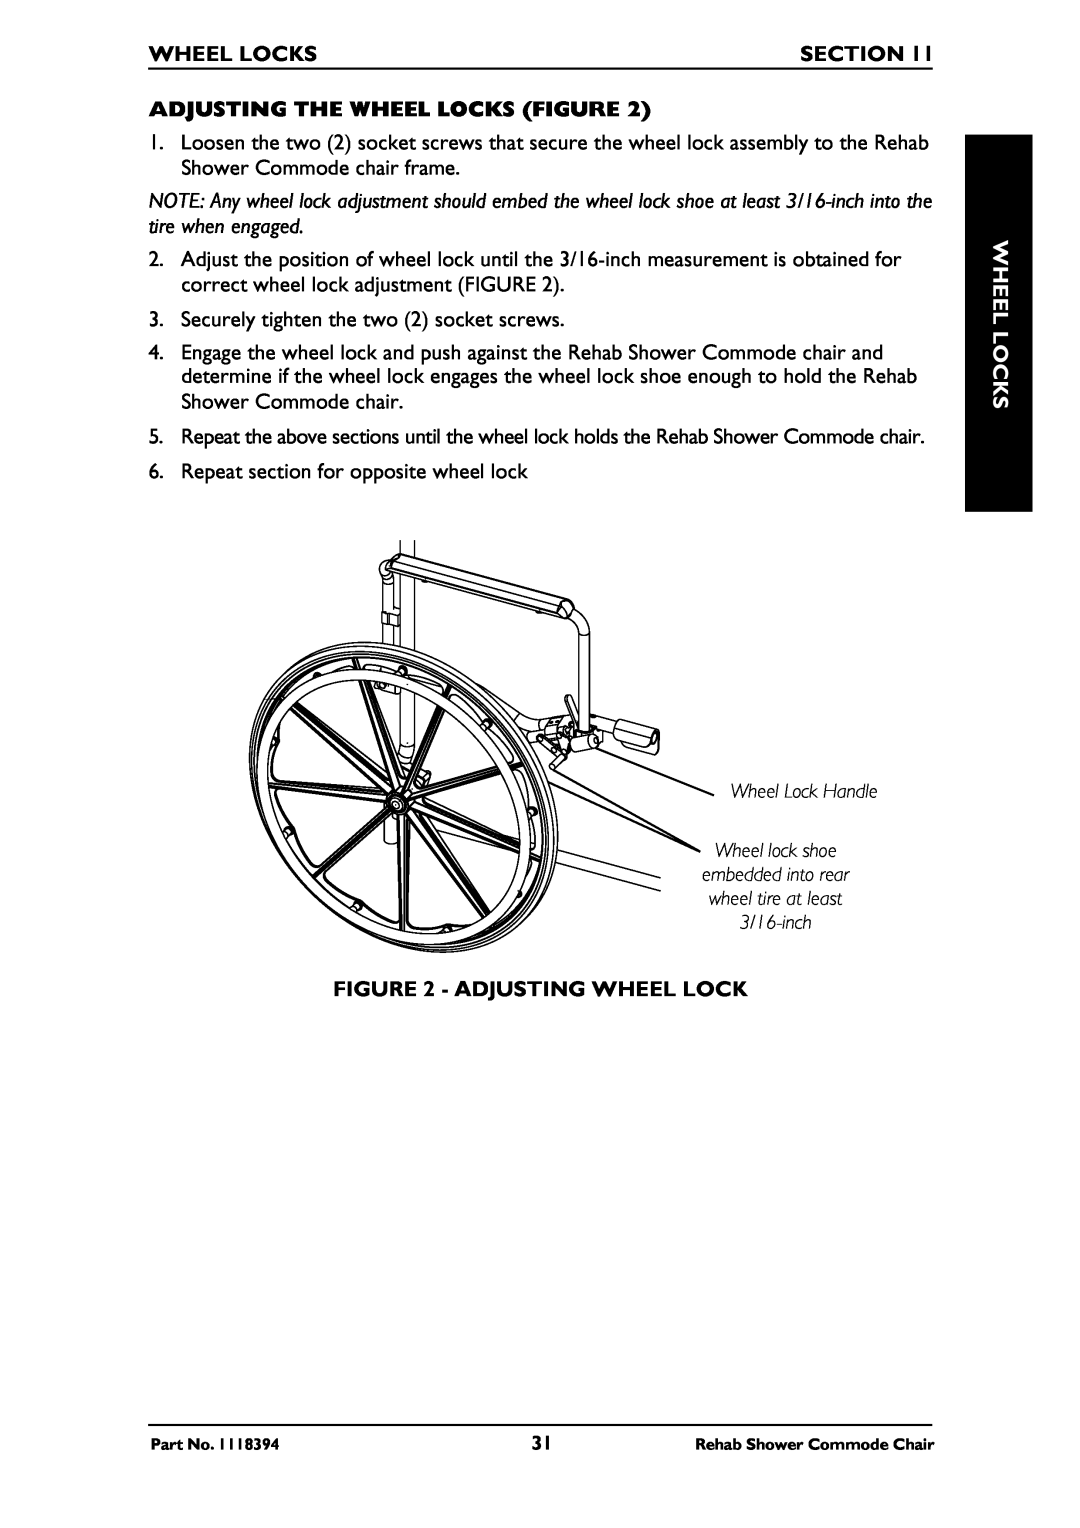 Invacare 6895, 6795, 6891 manual Section, Adjusting The Wheel Locks Figure, Adjusting Wheel Lock 